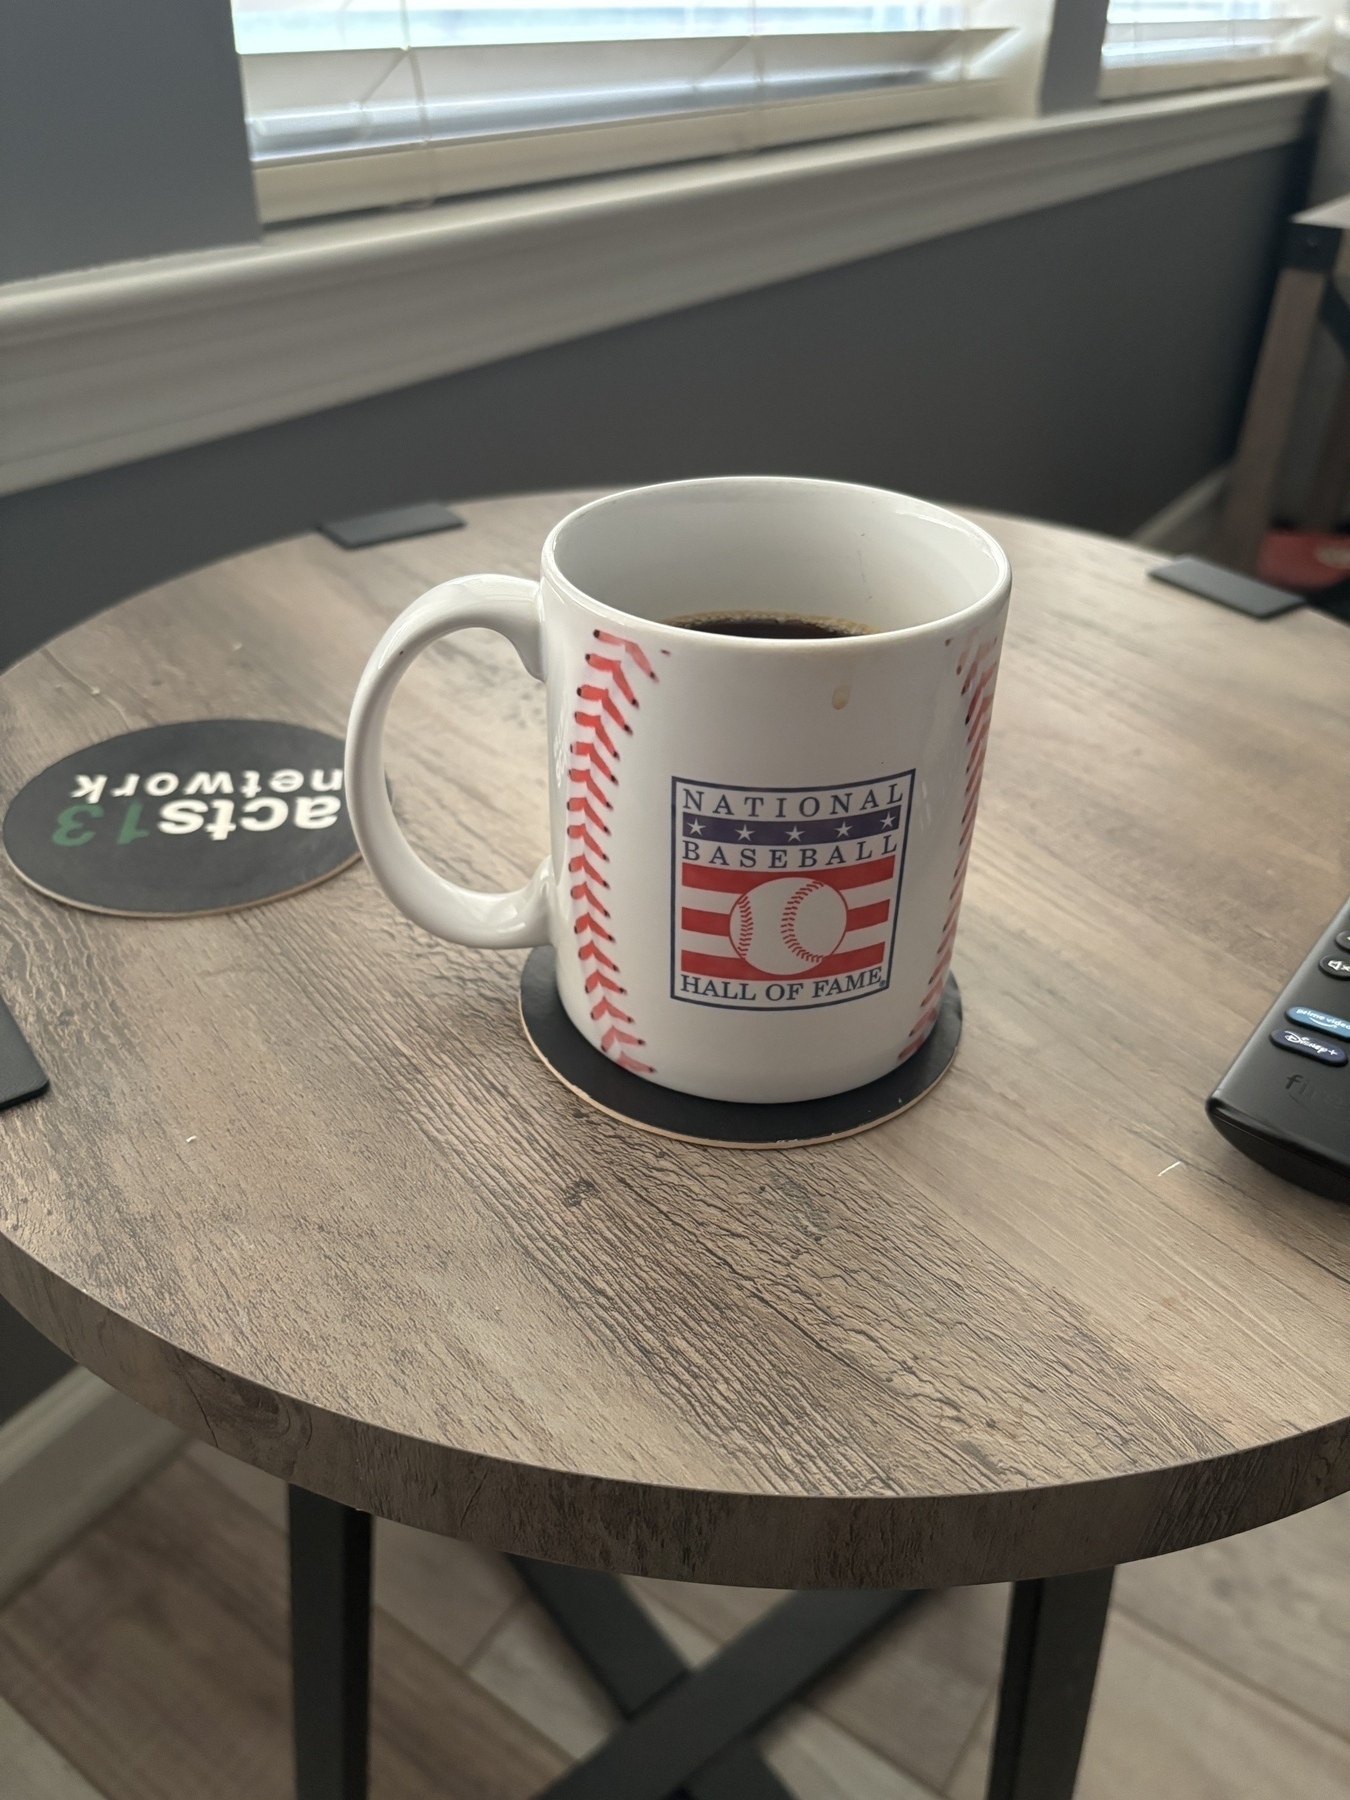 National baseball hall of fame coffee mug on a side table